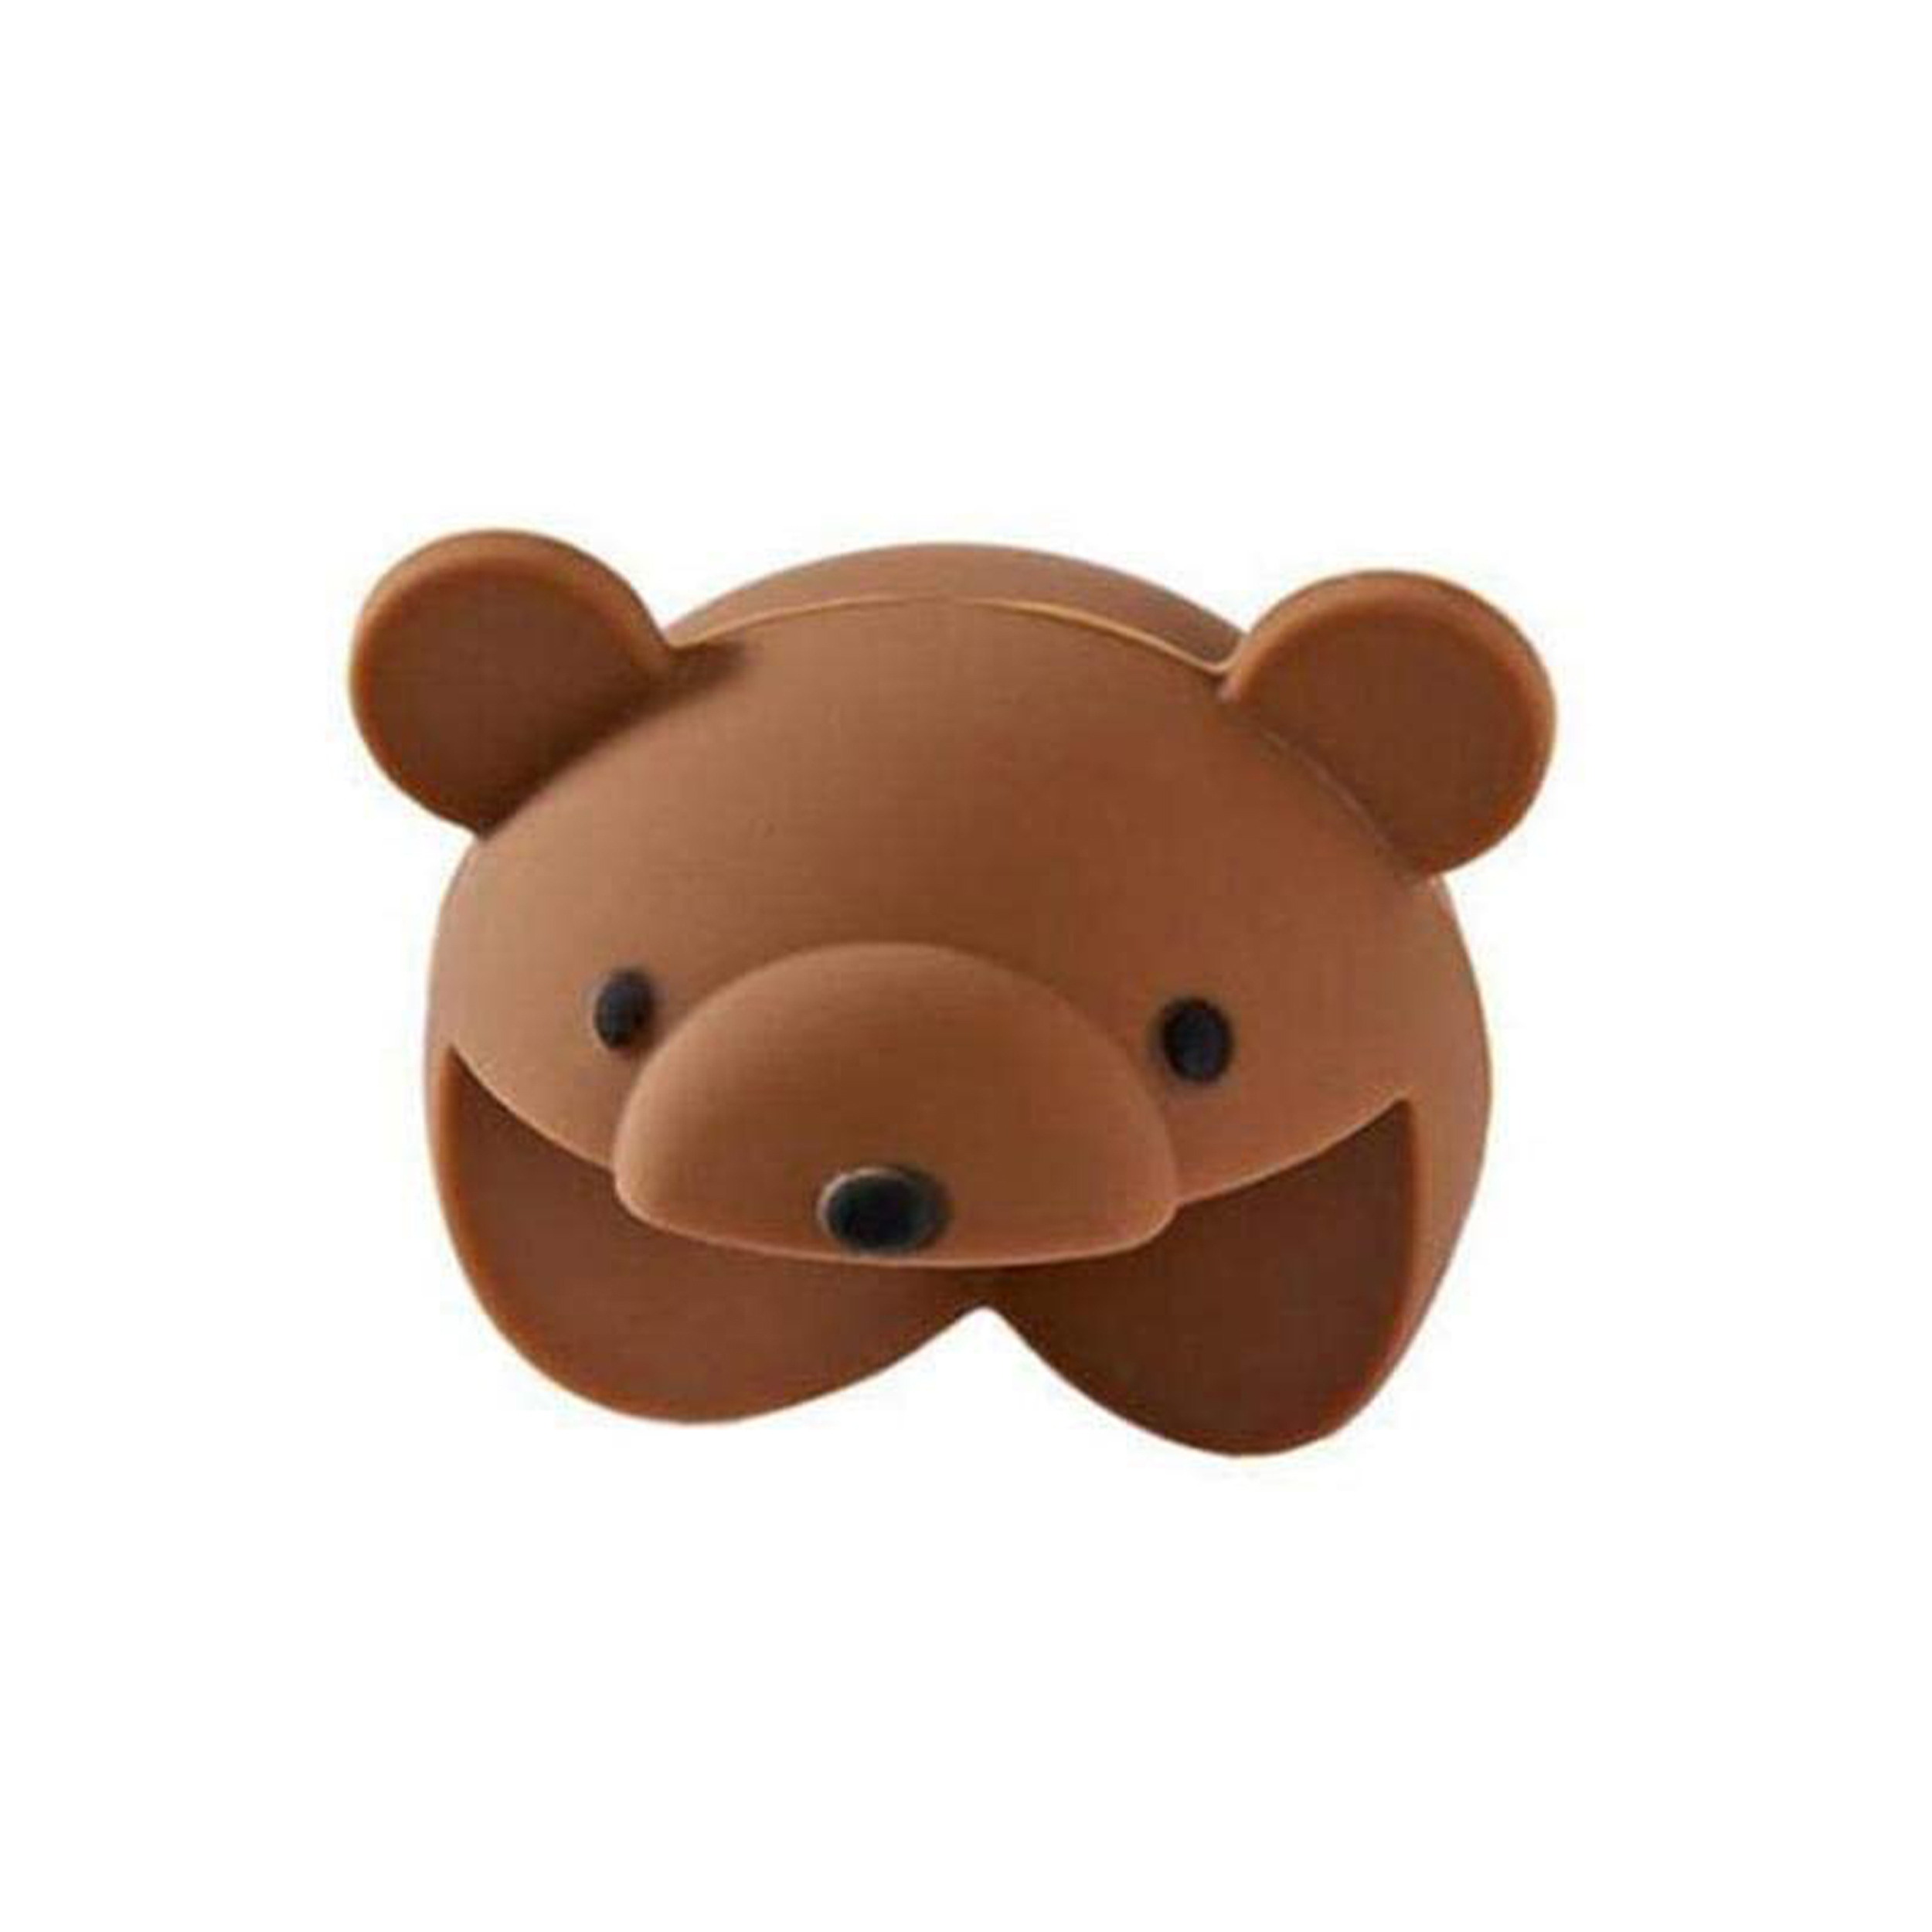 محافظ کنج و گوشه کودک مدل خرس بسته 2 عددی